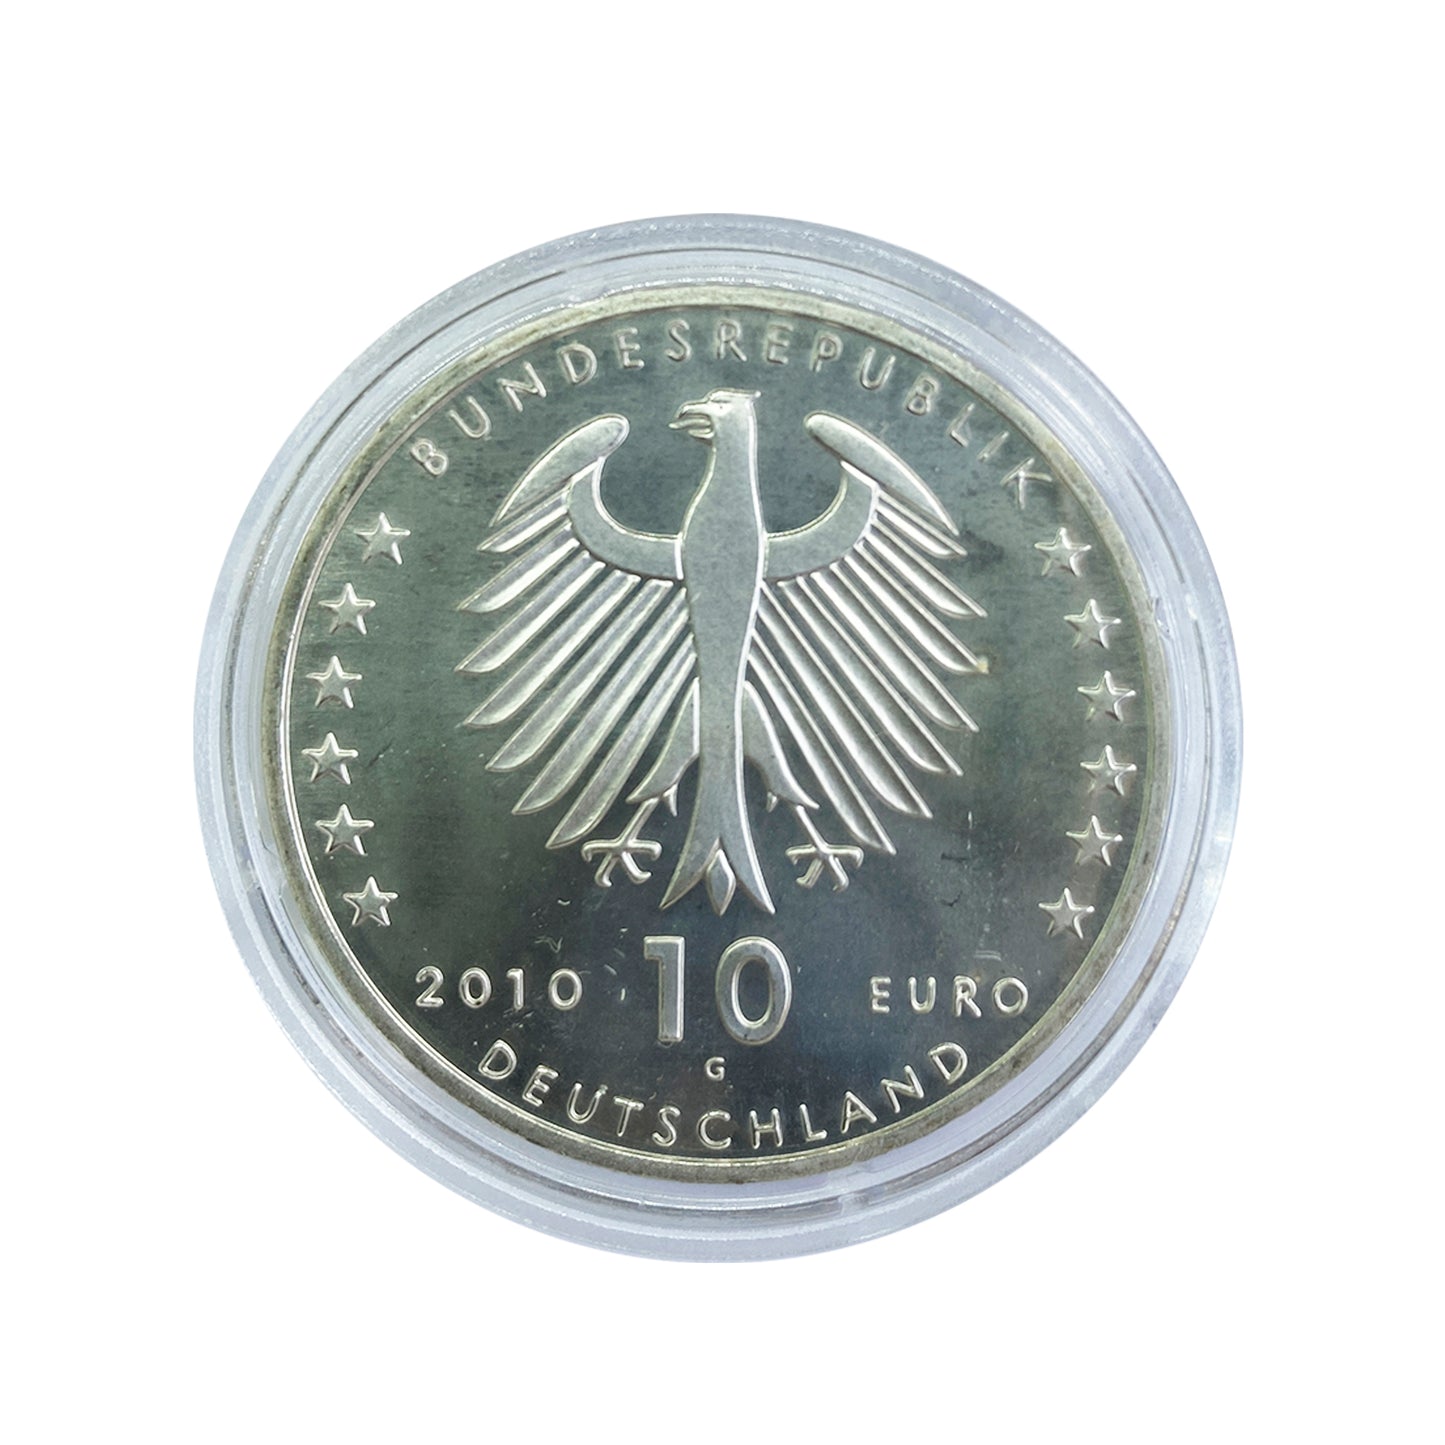 Alemania - Moneda 10 euros plata 2010 - Centenario del nacimiento de Konrad Zuse